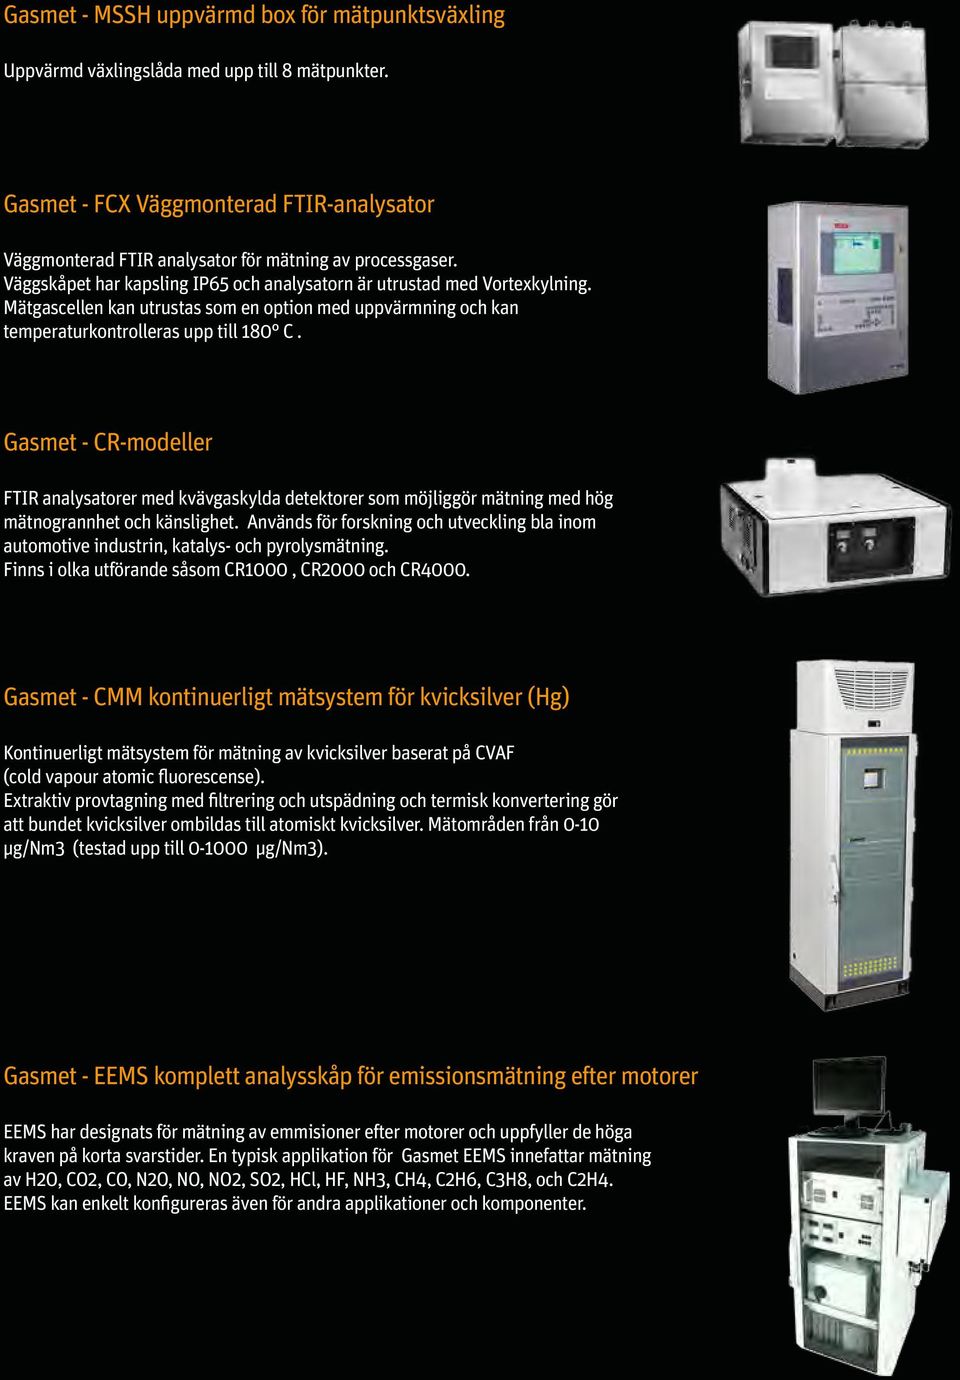 Gasmet - CR-modeller FTIR analysatorer med kvävgaskylda detektorer som möjliggör mätning med hög mätnogrannhet och känslighet.